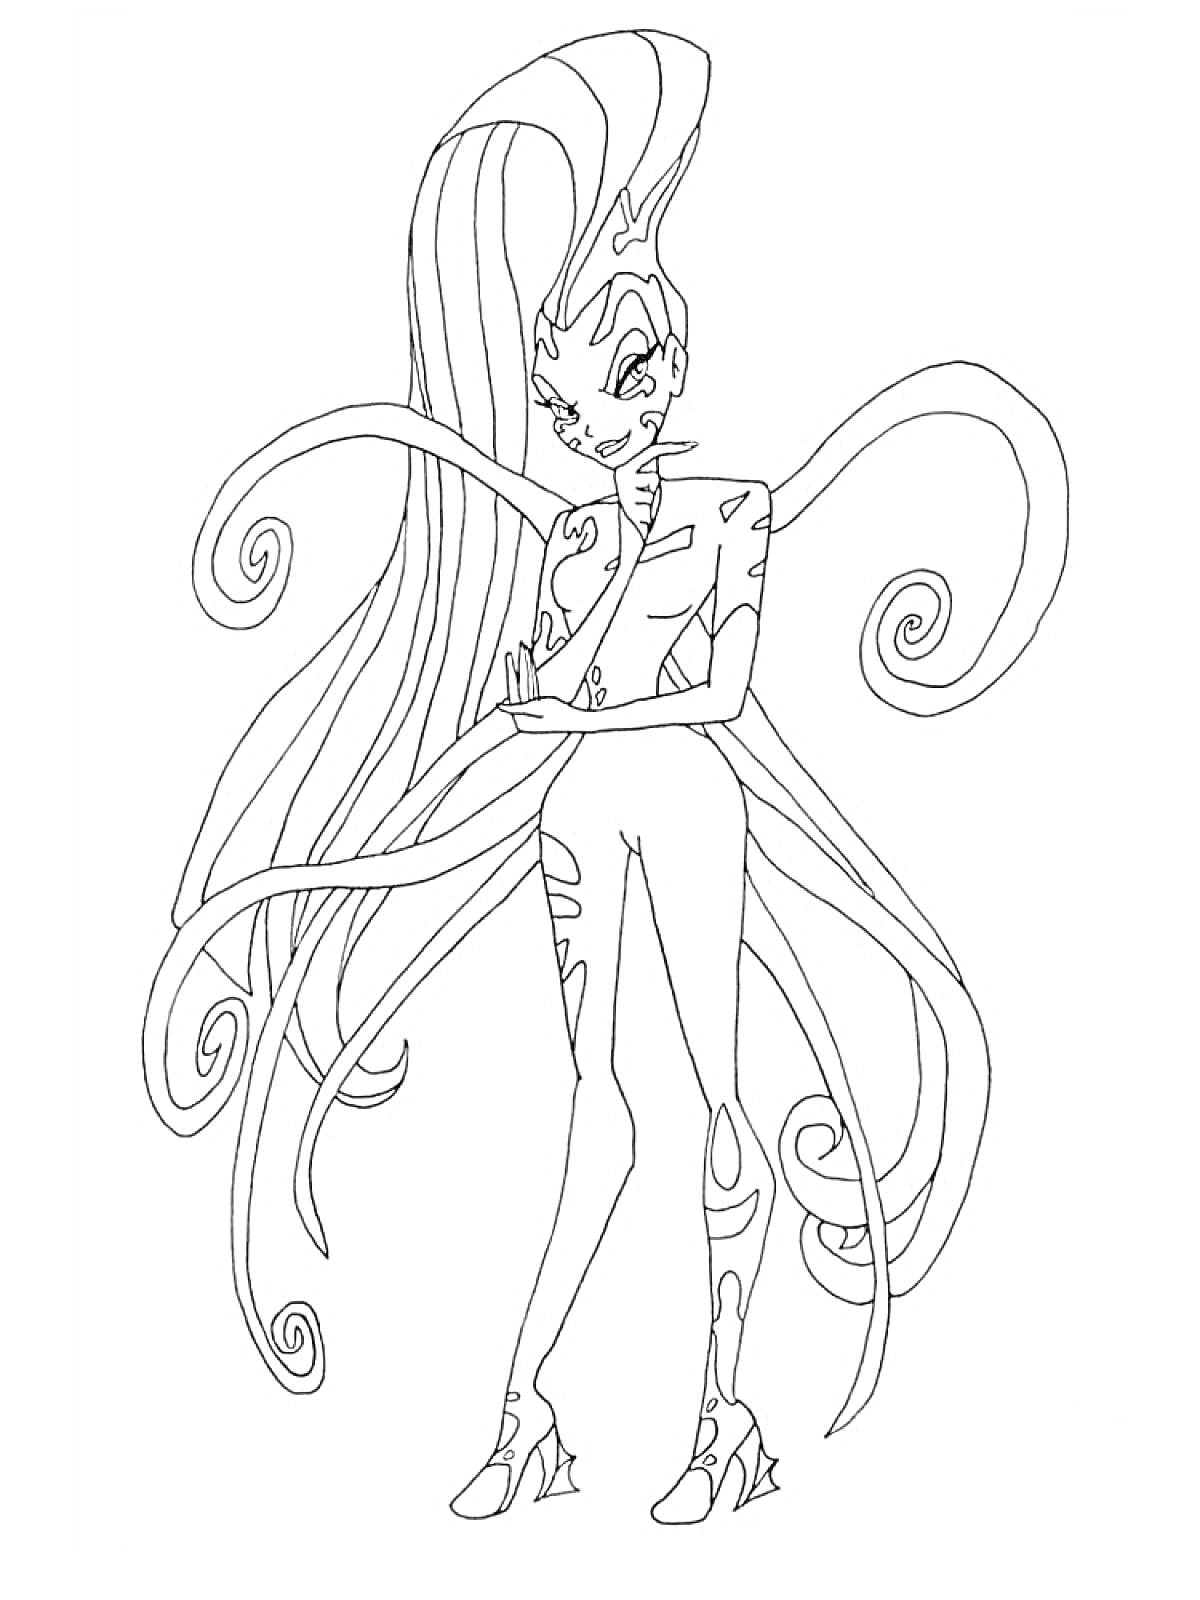 Раскраска Волшебница с длинными волосами и закрученными локонами